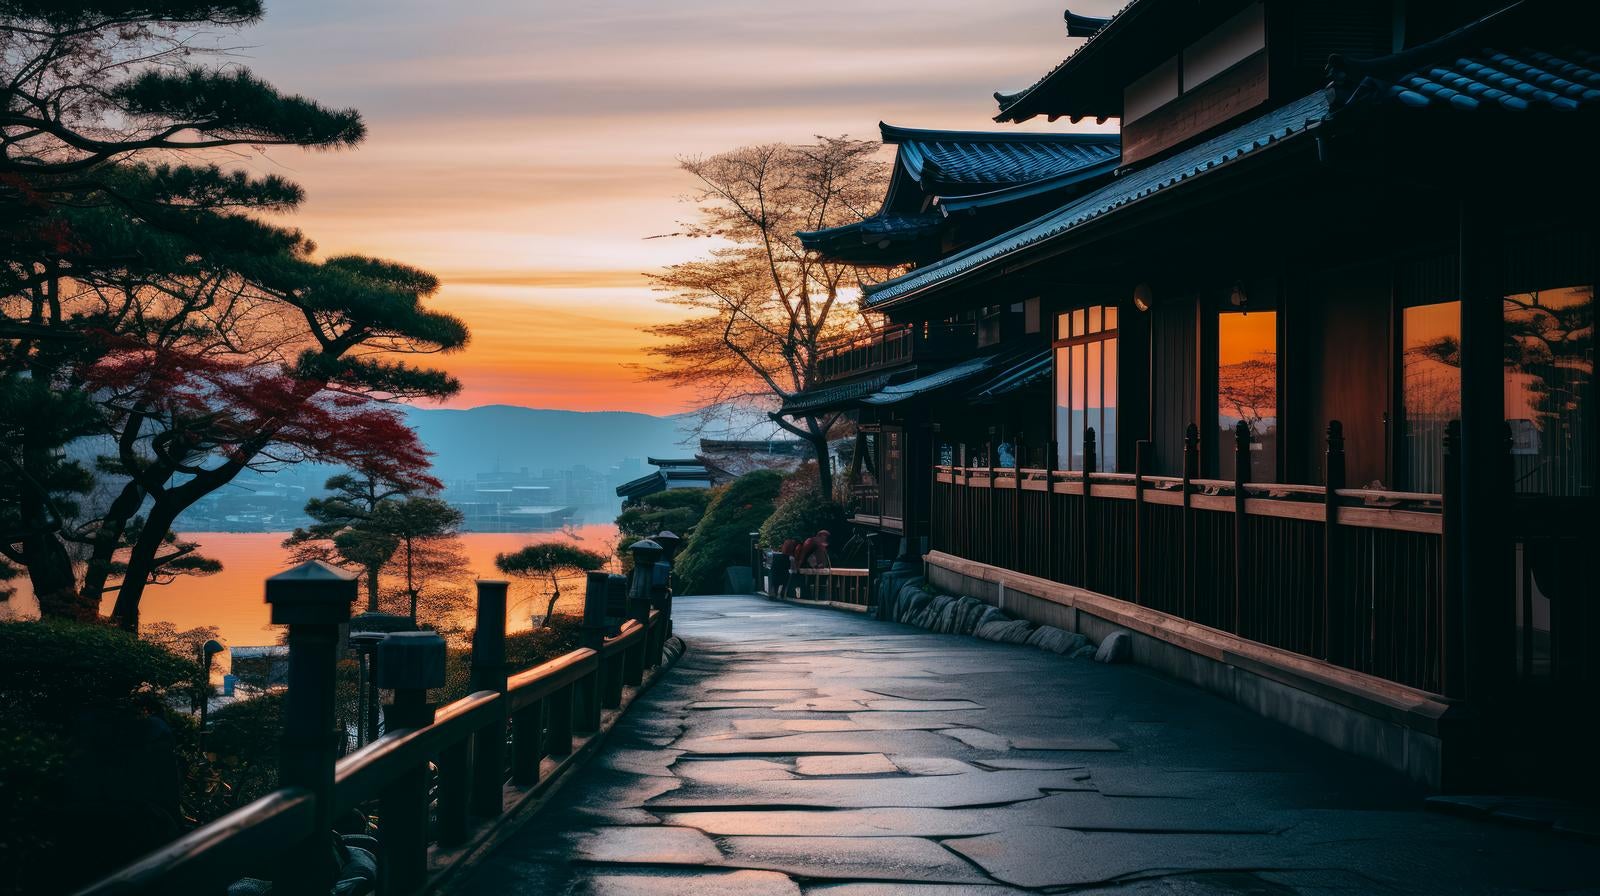 「夜明けと日本家屋風の建物」の写真